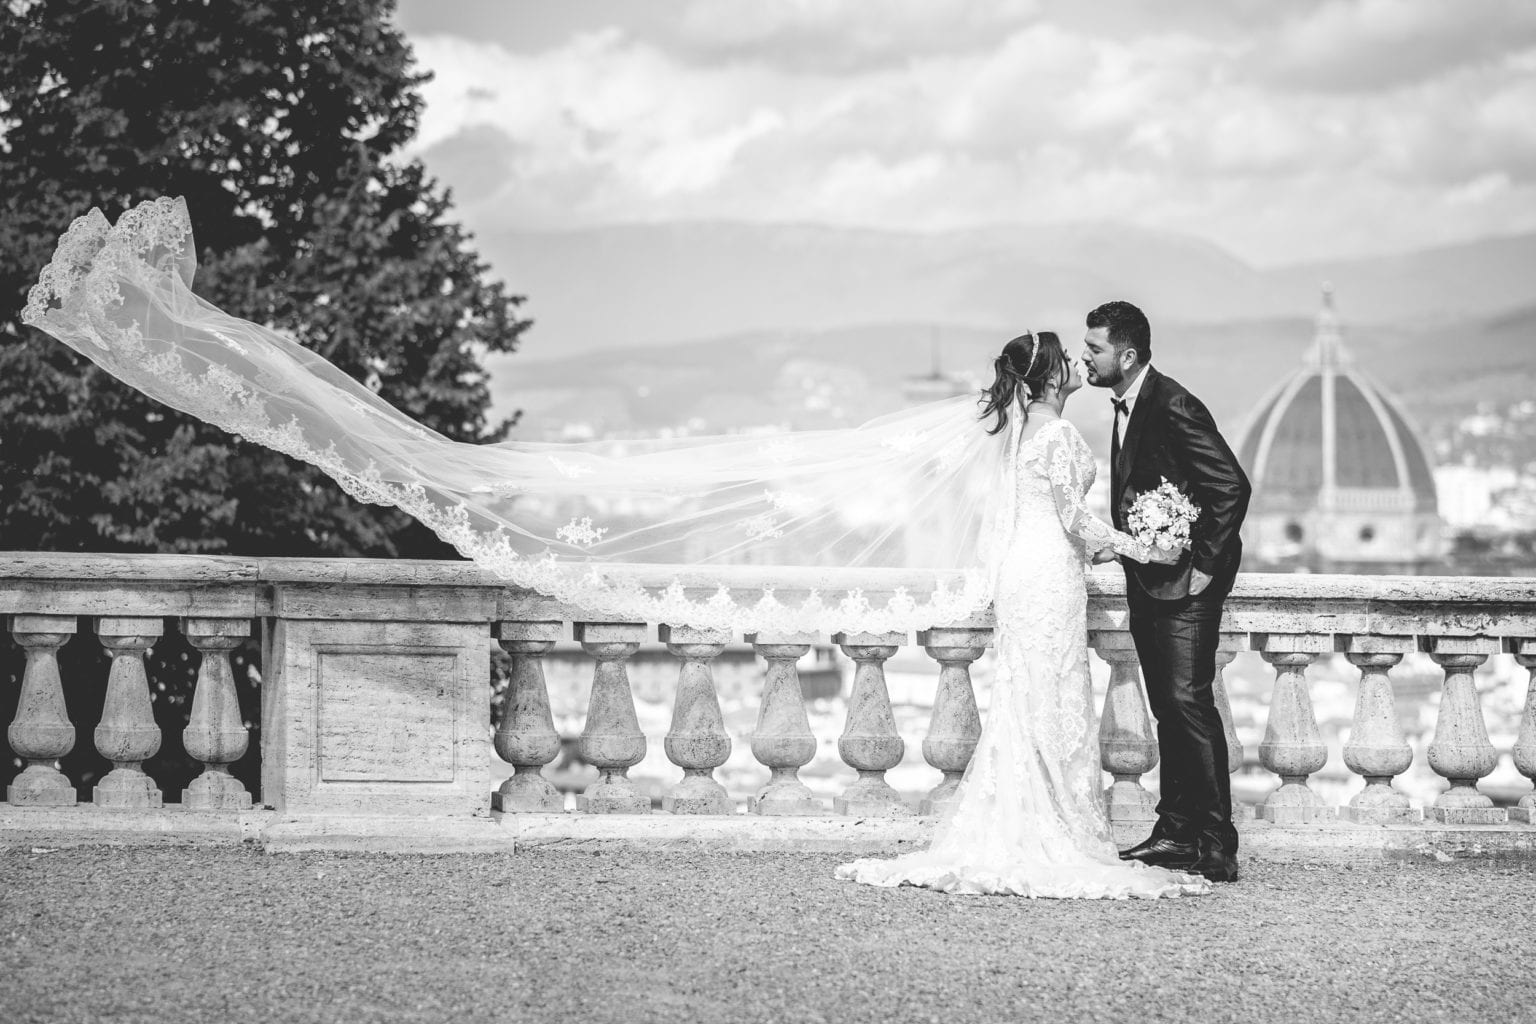 YES WEDDING ITALY CEREMONY SYMBOLIC TUSCANY CASTLE TIAGO CELANE (1)